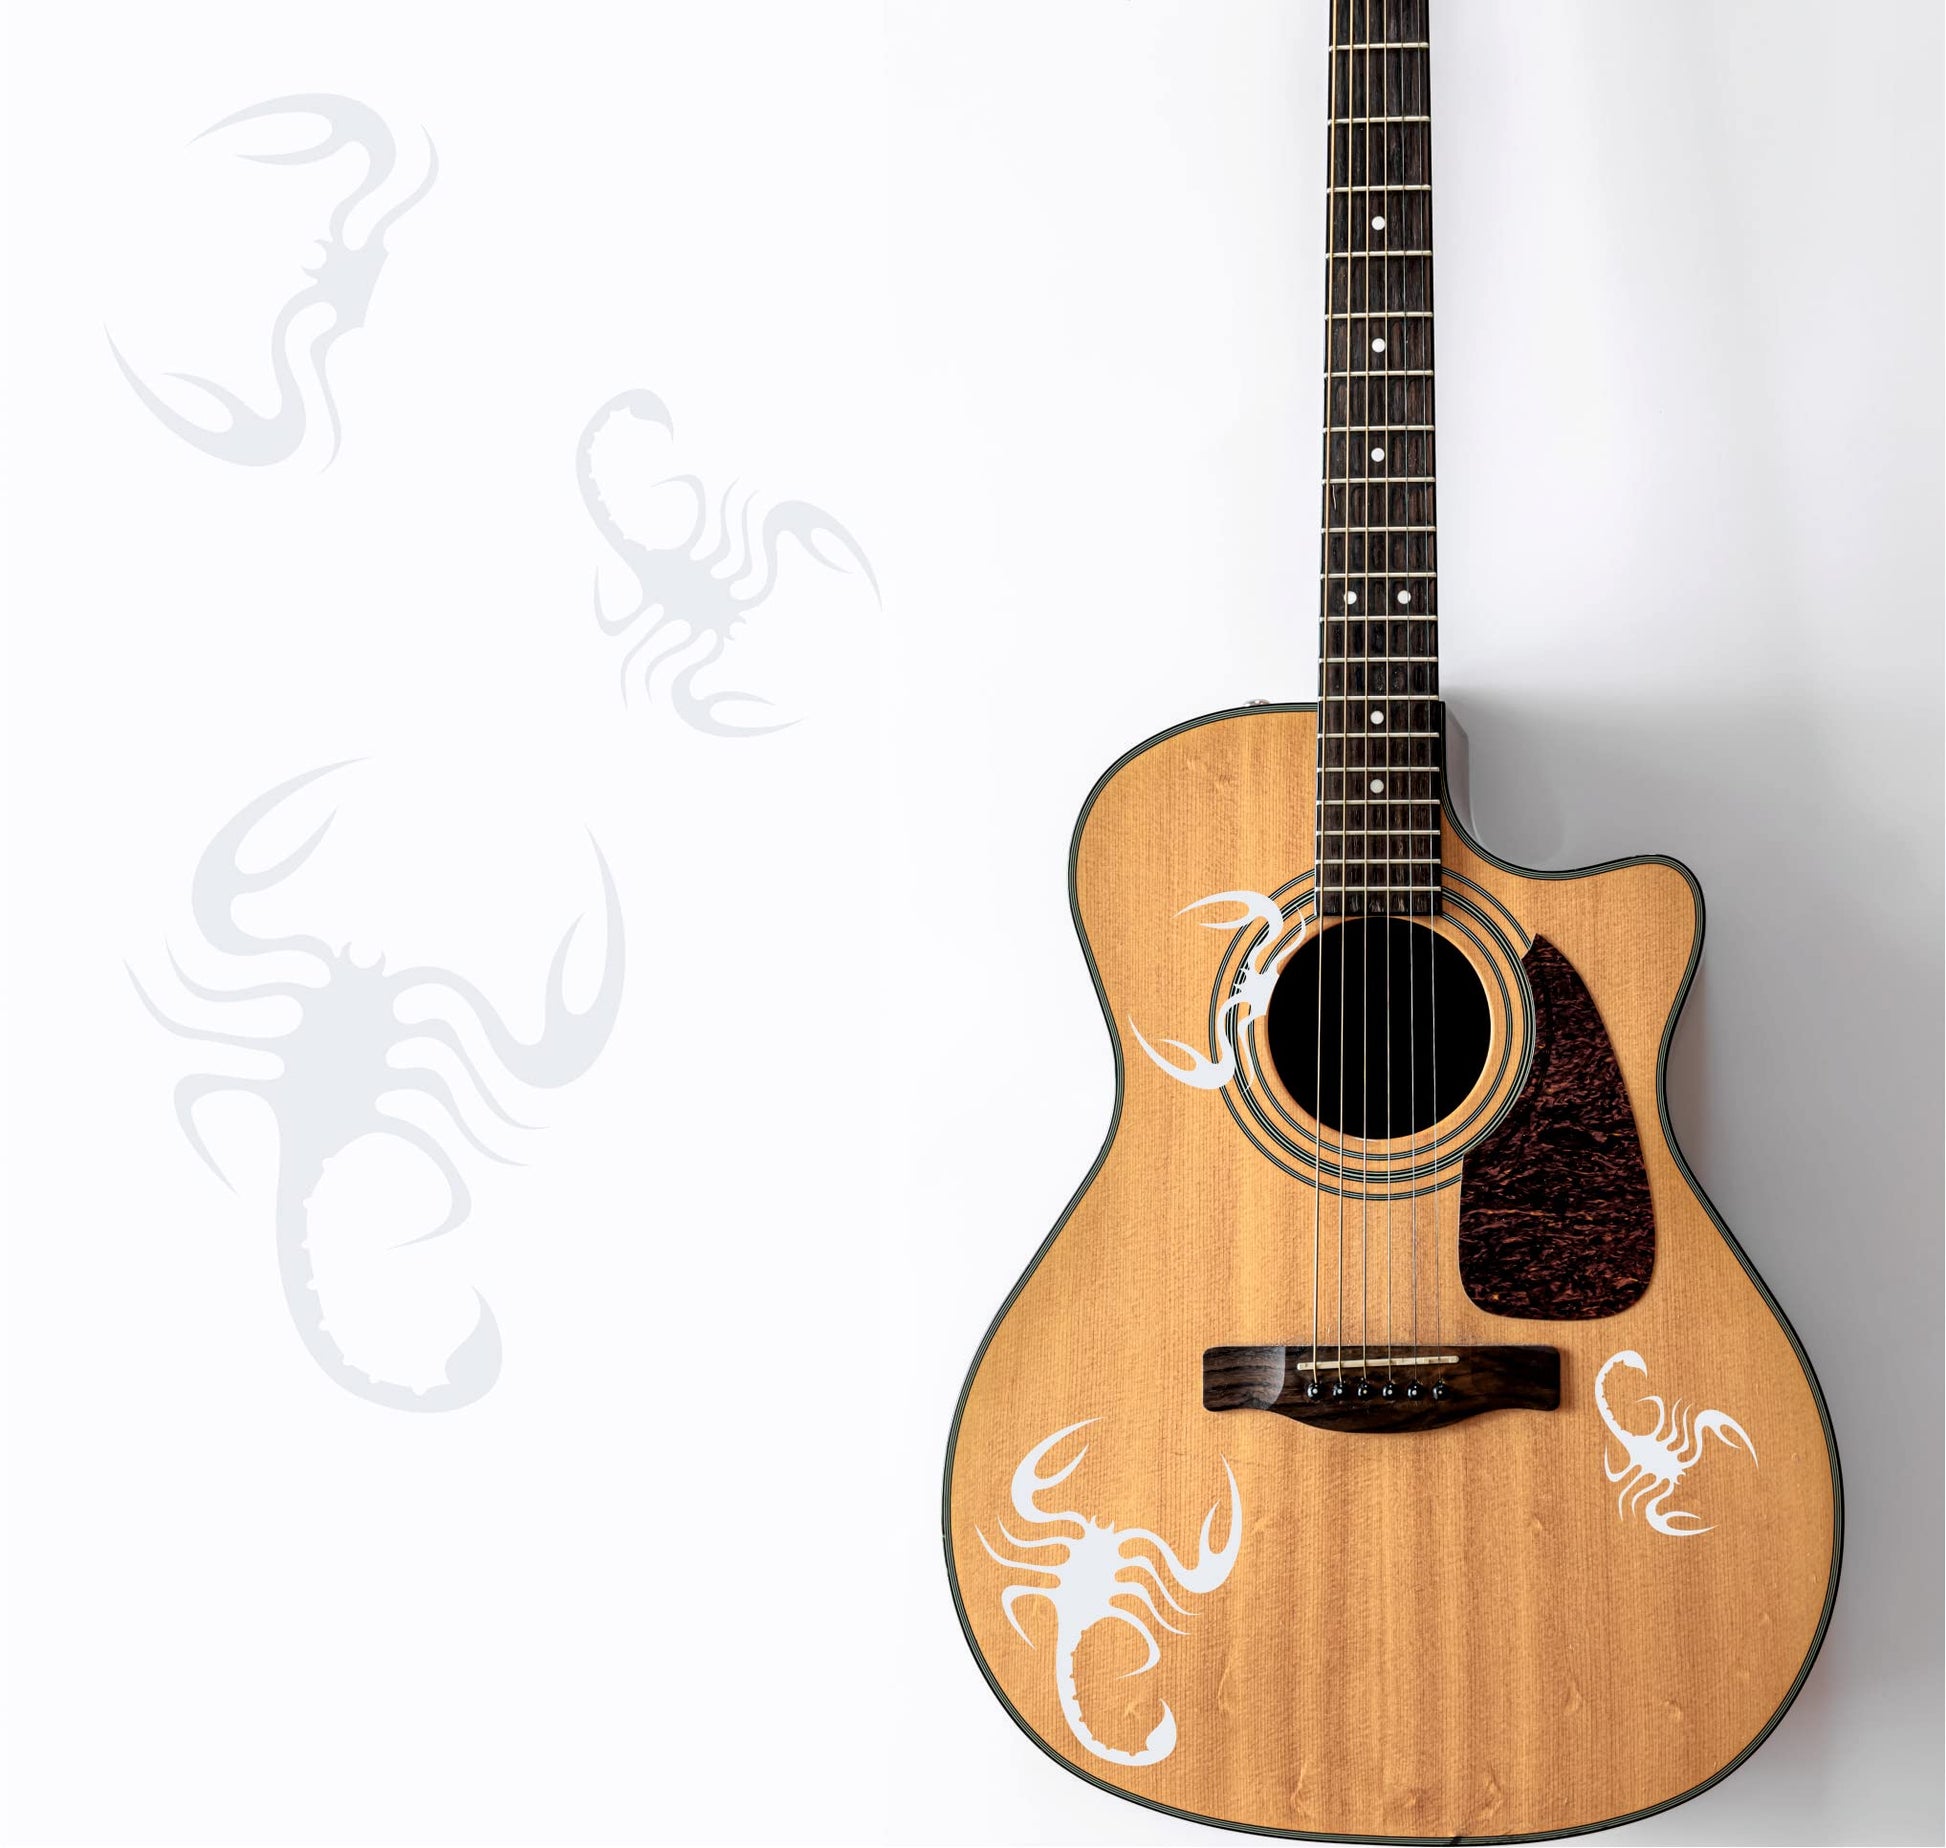 DualColorStampe Adesivi per chitarra classica acustica elettrica basso (kit da 3 pezzi) scorpione accessori per chitarra - X0011 a €15.99 solo da DualColorStampe